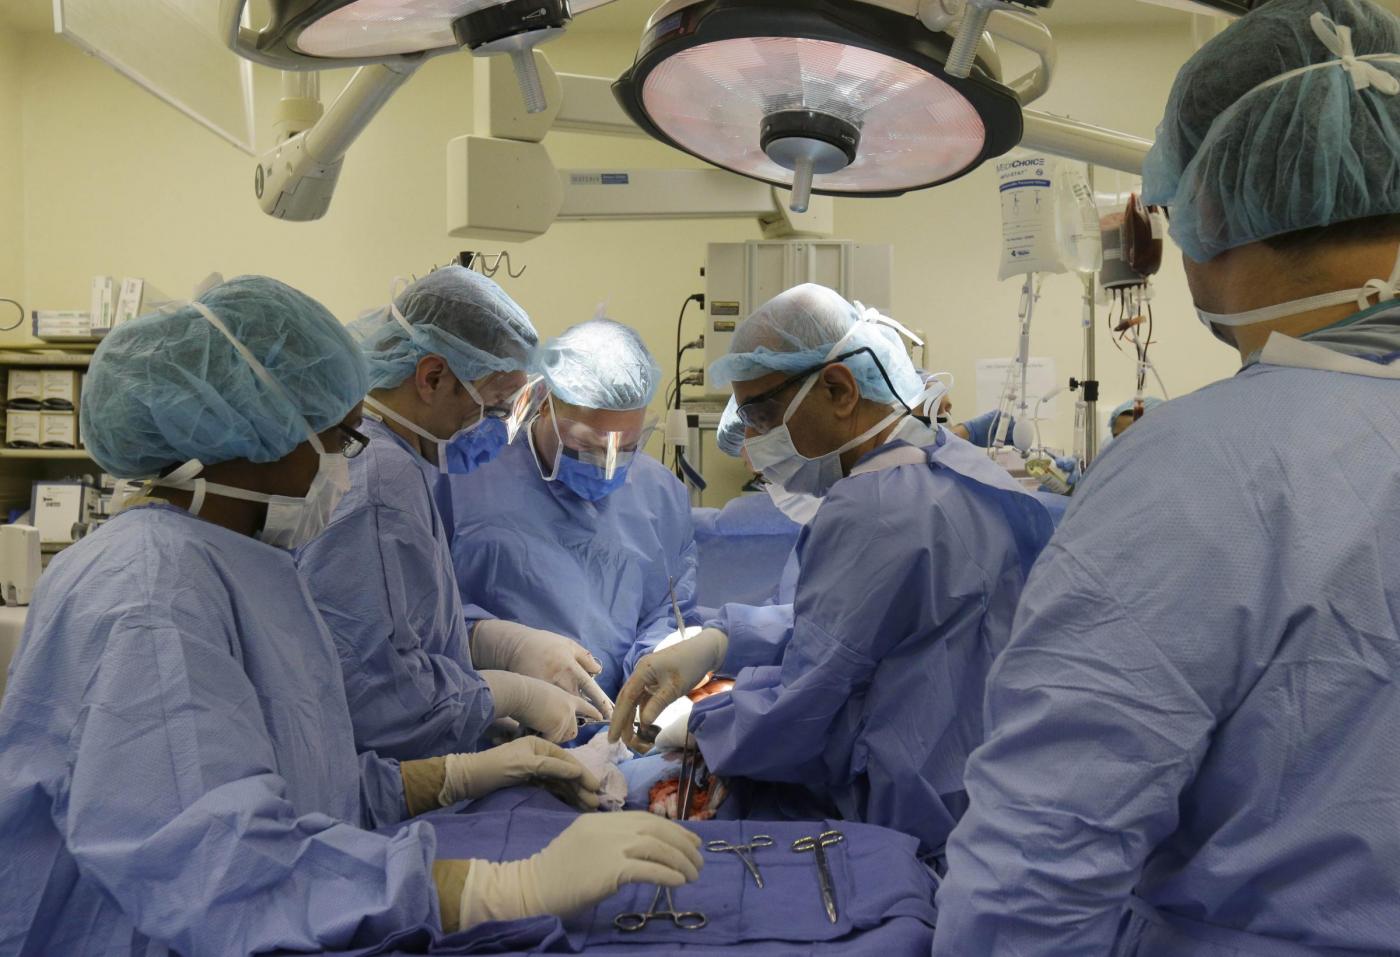 10 cose strane accadute durante un intervento chirurgico